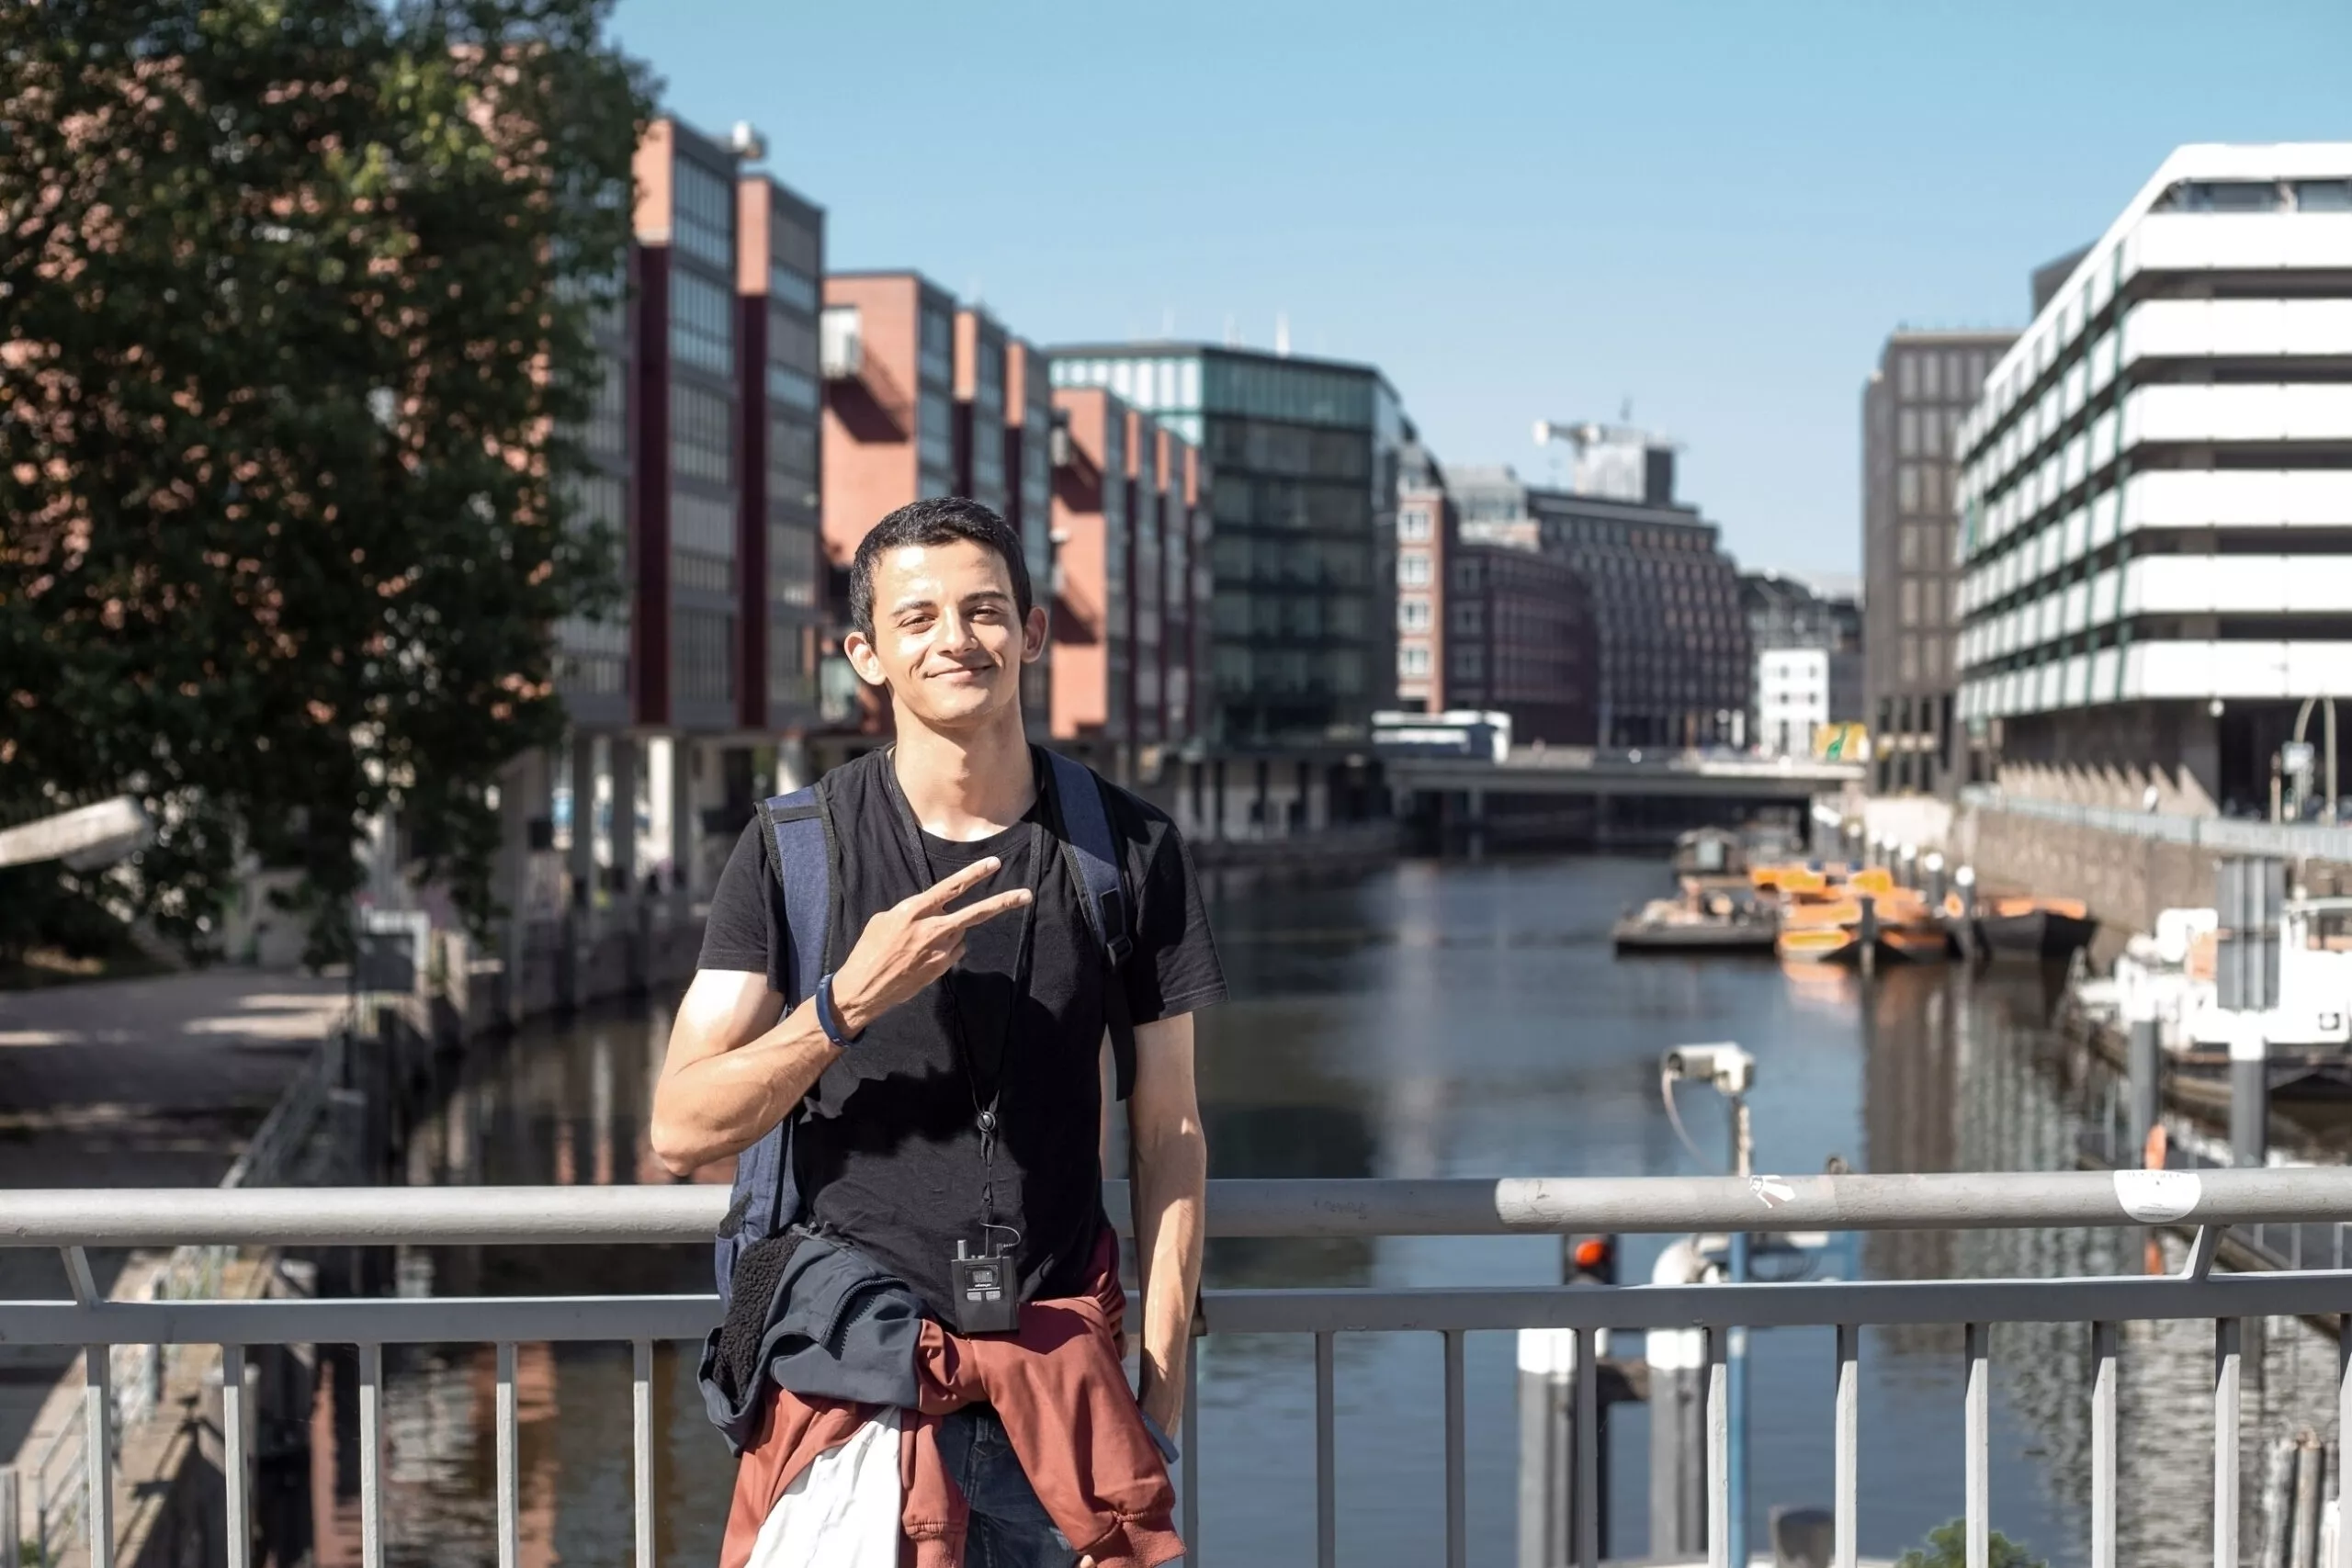 Ung man från Mellanöstern med ryggsäck går på eurotrip-utflykt i centrala Hamburg i Tyskland med hjälp av ljudguide och fotograferas mot bakgrund av stadens kanaler i solig sommardag